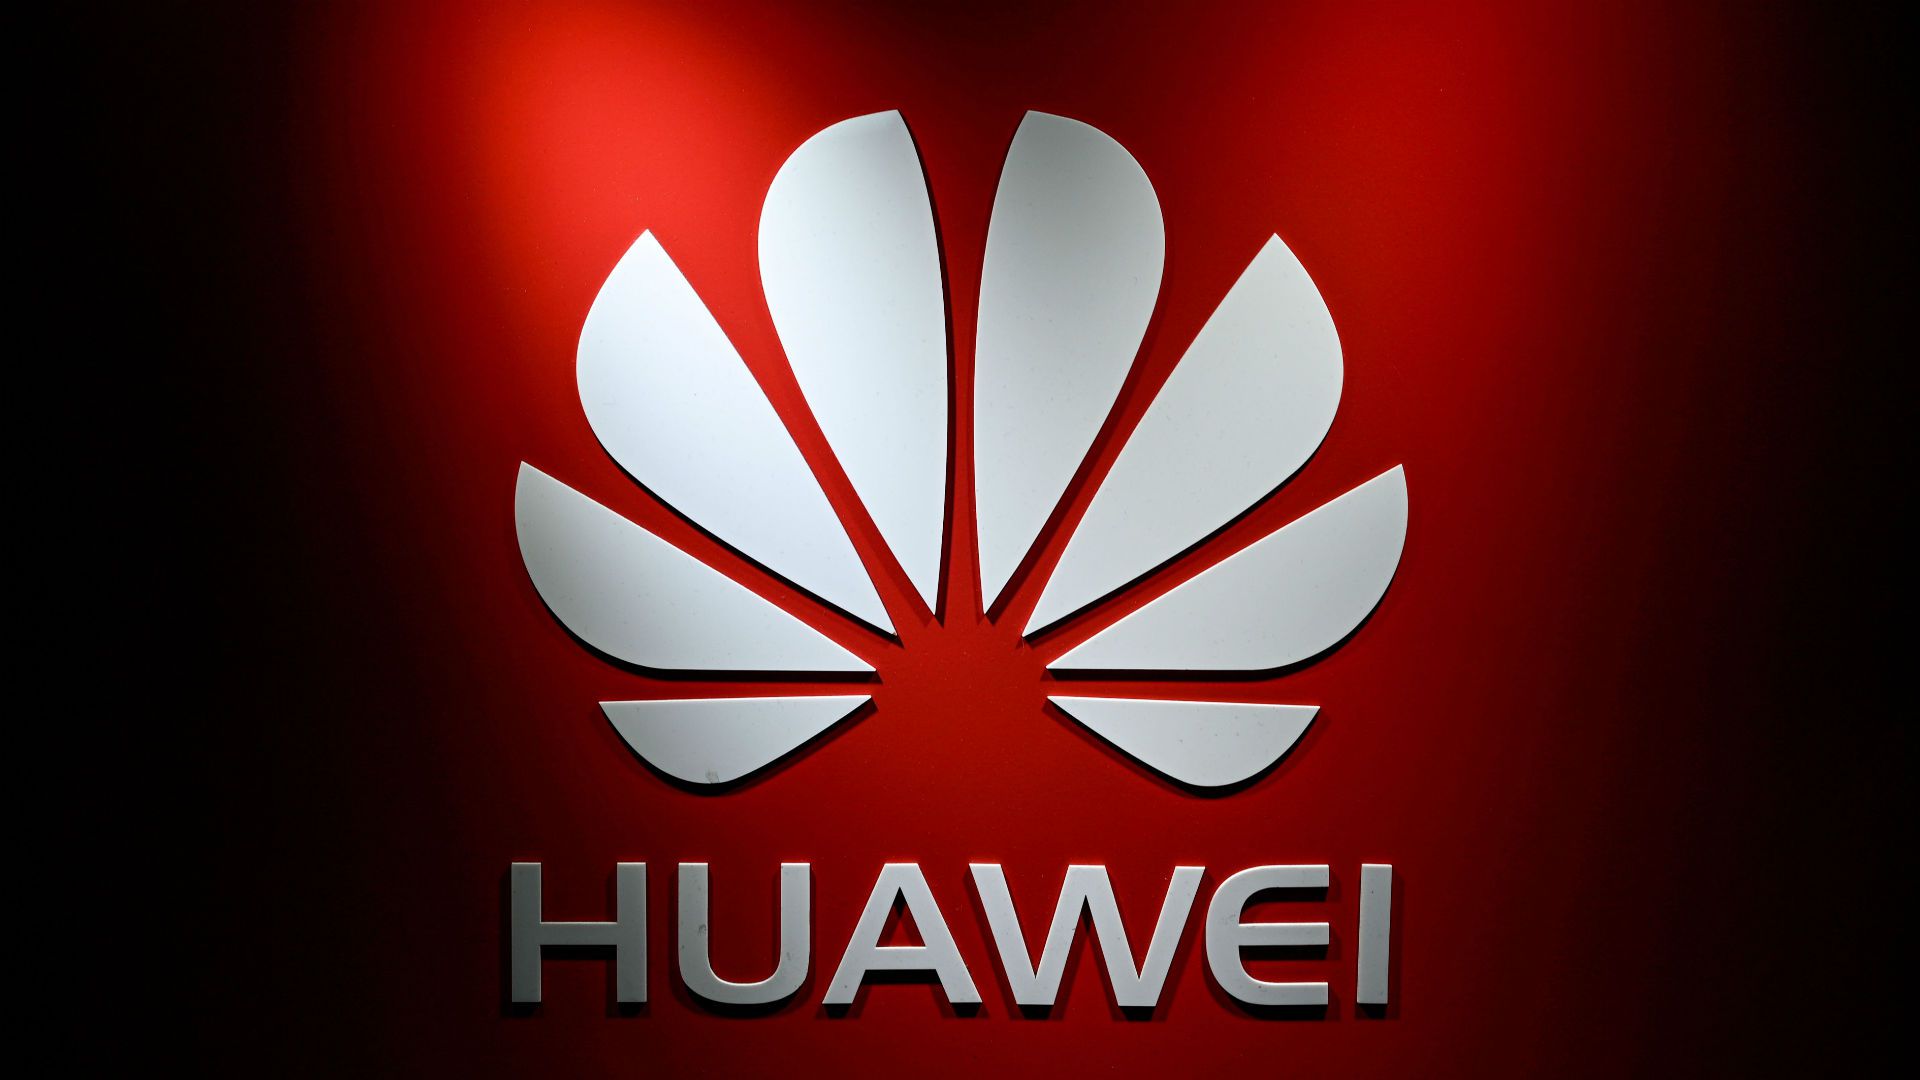 همه چیز درباره ی هواوی Huawei